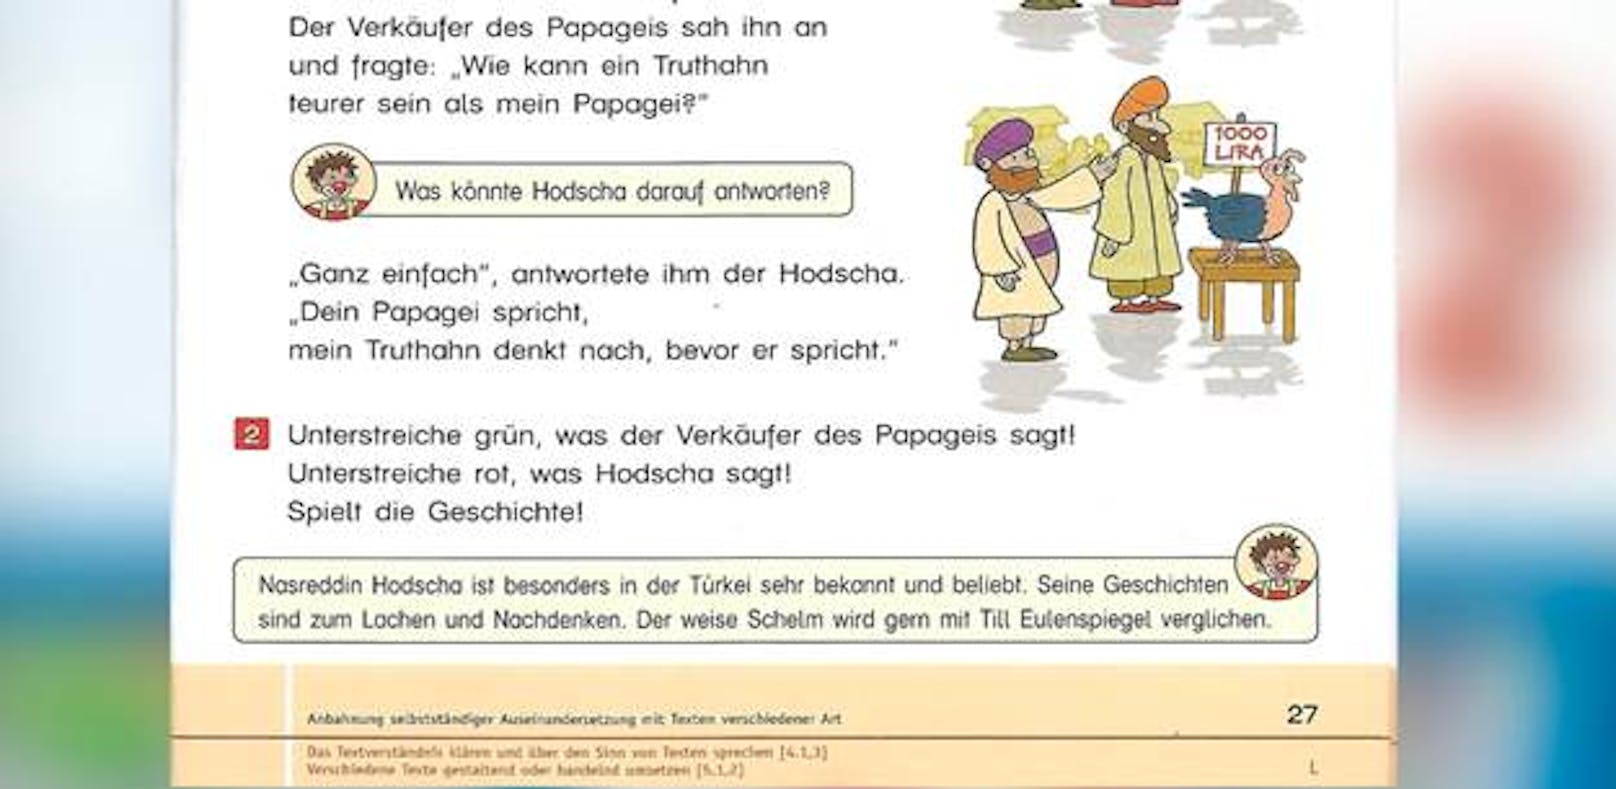 Mit diesem Schulbuch soll die deutsche Sprache vermittelt werden. 